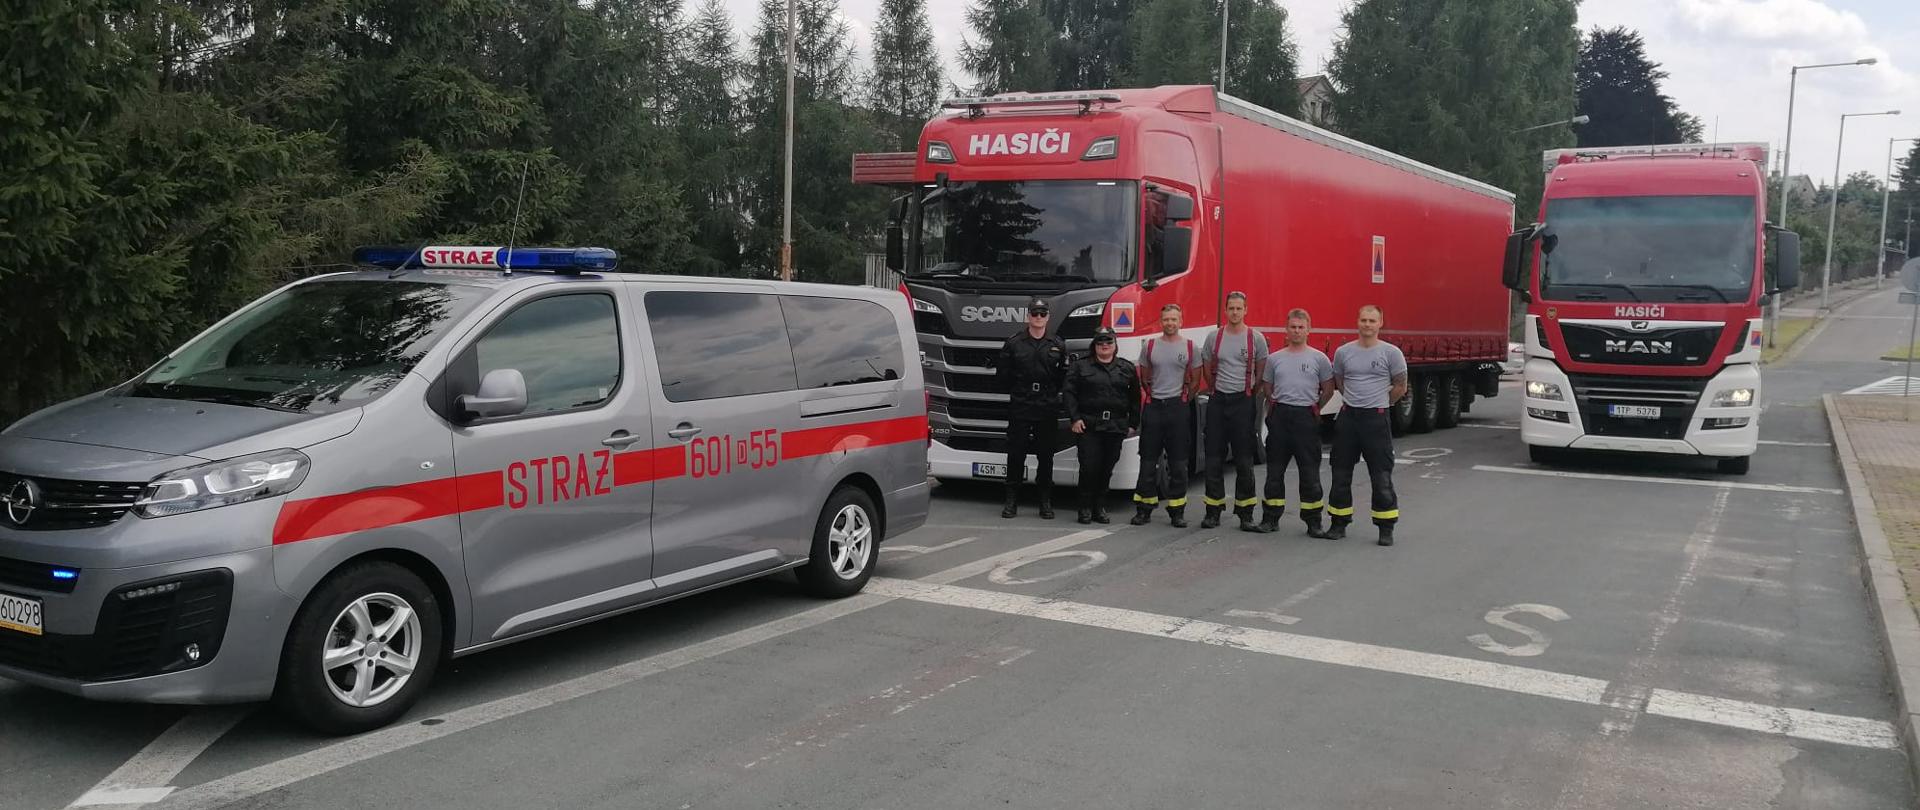 Samochód typu bus z numerami operacyjnymi 601D55. Za nim w szeregu dwójka funkcjonariuszy PSP w mundurach służbowych (mężczyzna i kobieta). Obok nich czerech strażaków z Czech. Za nimi dwa samochody ciężarowe TIR.